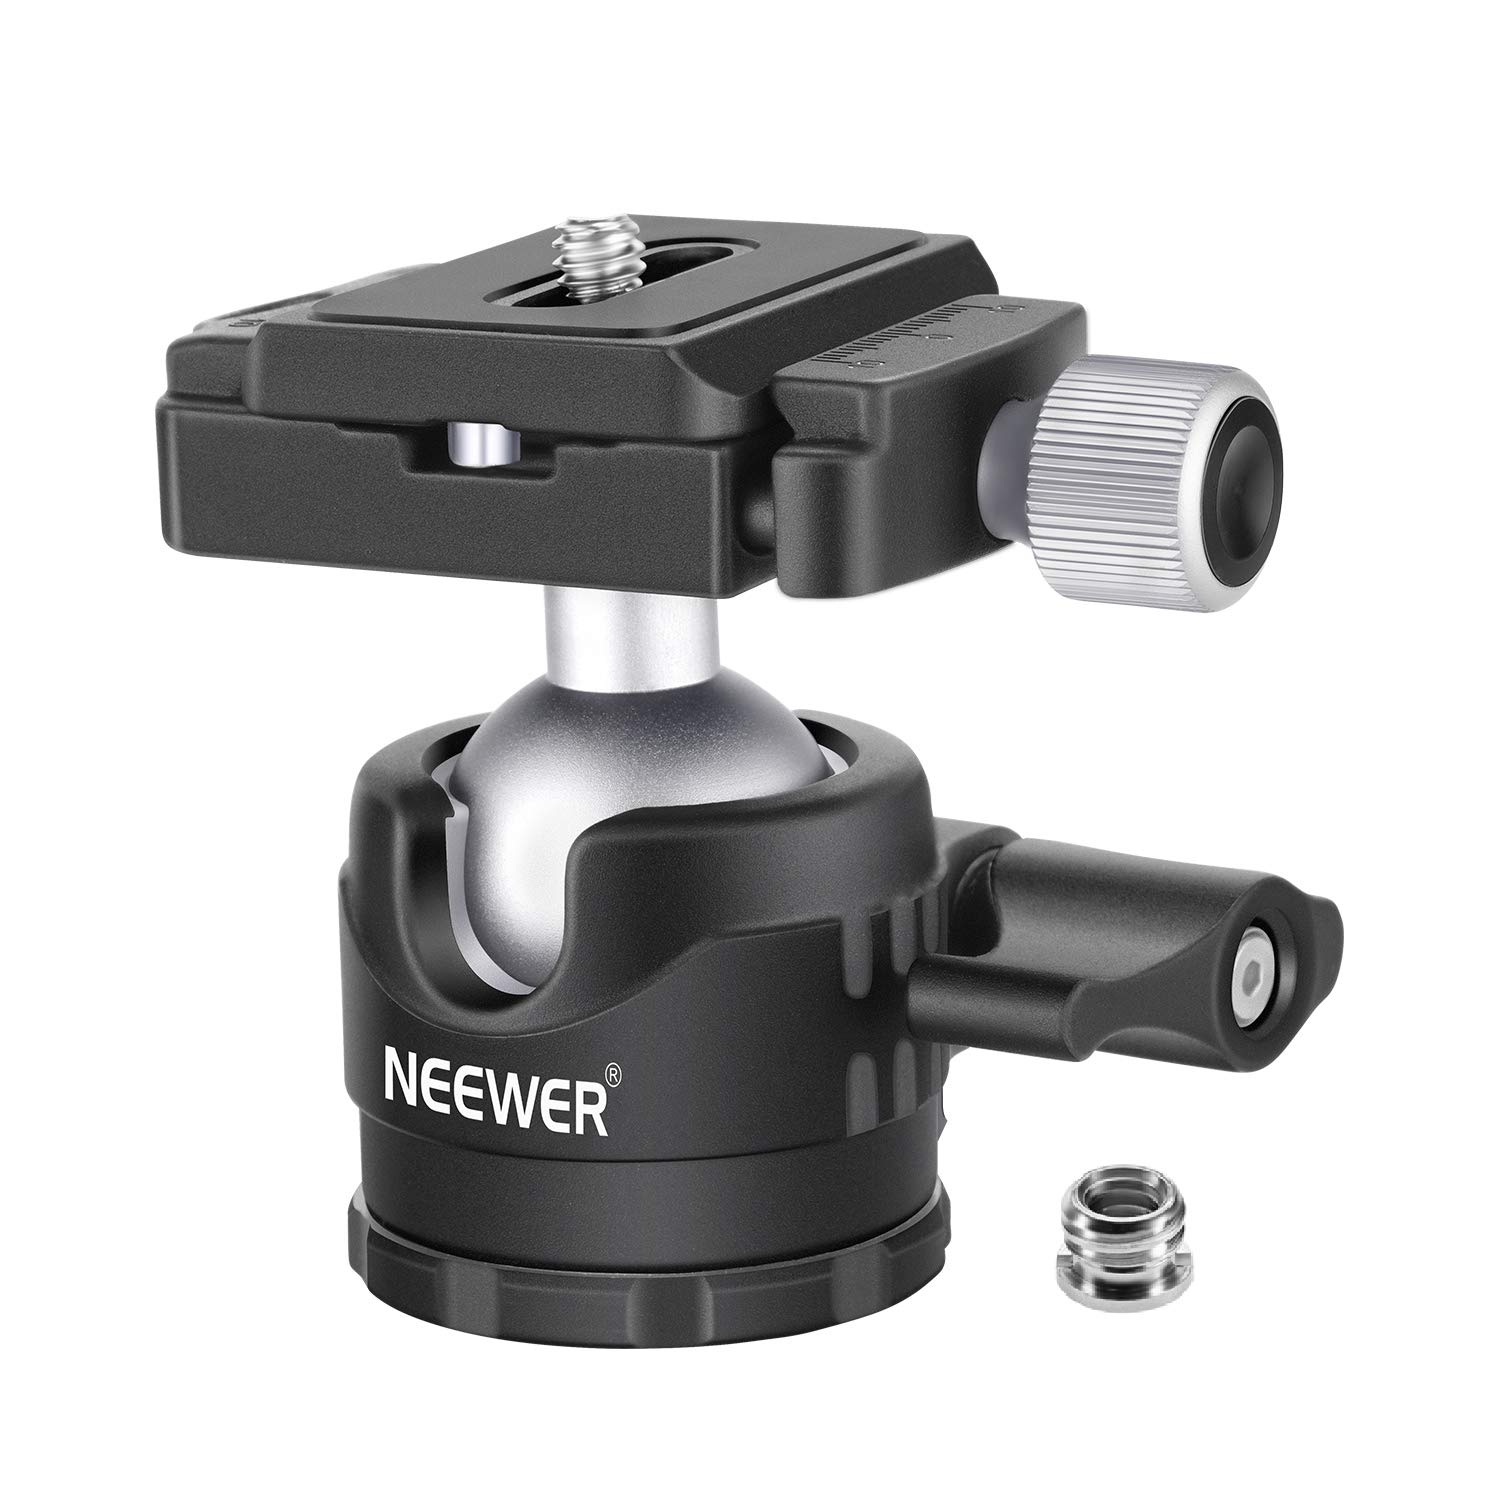 NEEWER 28mm Stativkugelkopf mit niedrigem Profil,360°Panoramadrehbar,mit 1/4" Arca Type QR Plate und Wasserwaage,geeignet für SLR Kamerastativ Einbeinstativ, maximale Belastung: 6,6 lb/3 kg